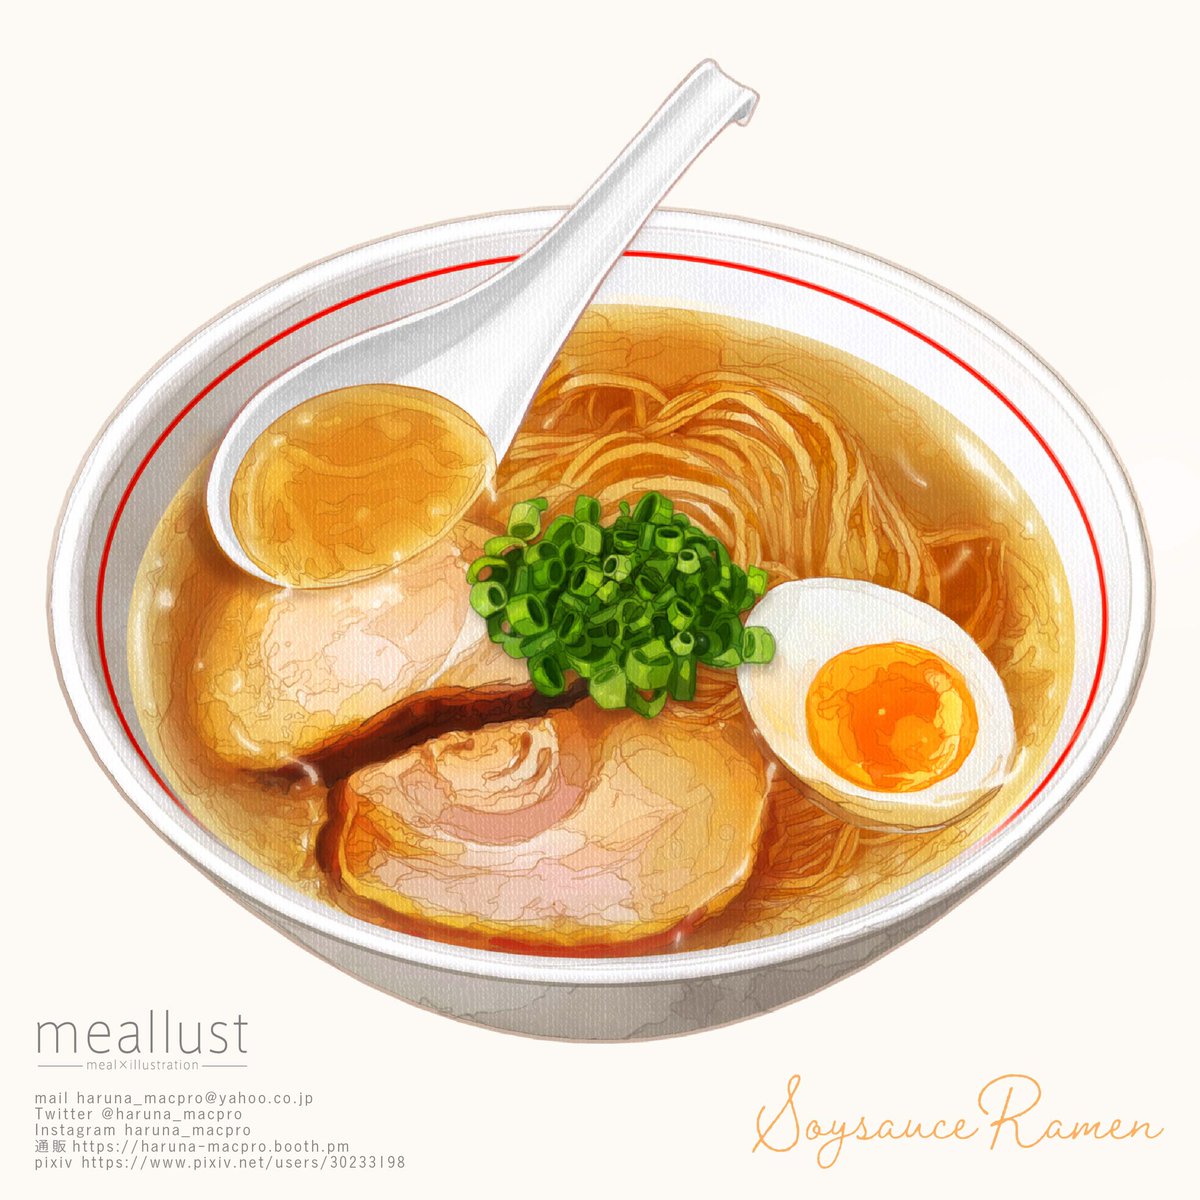 no humans food focus food noodles white background egg simple background  illustration images